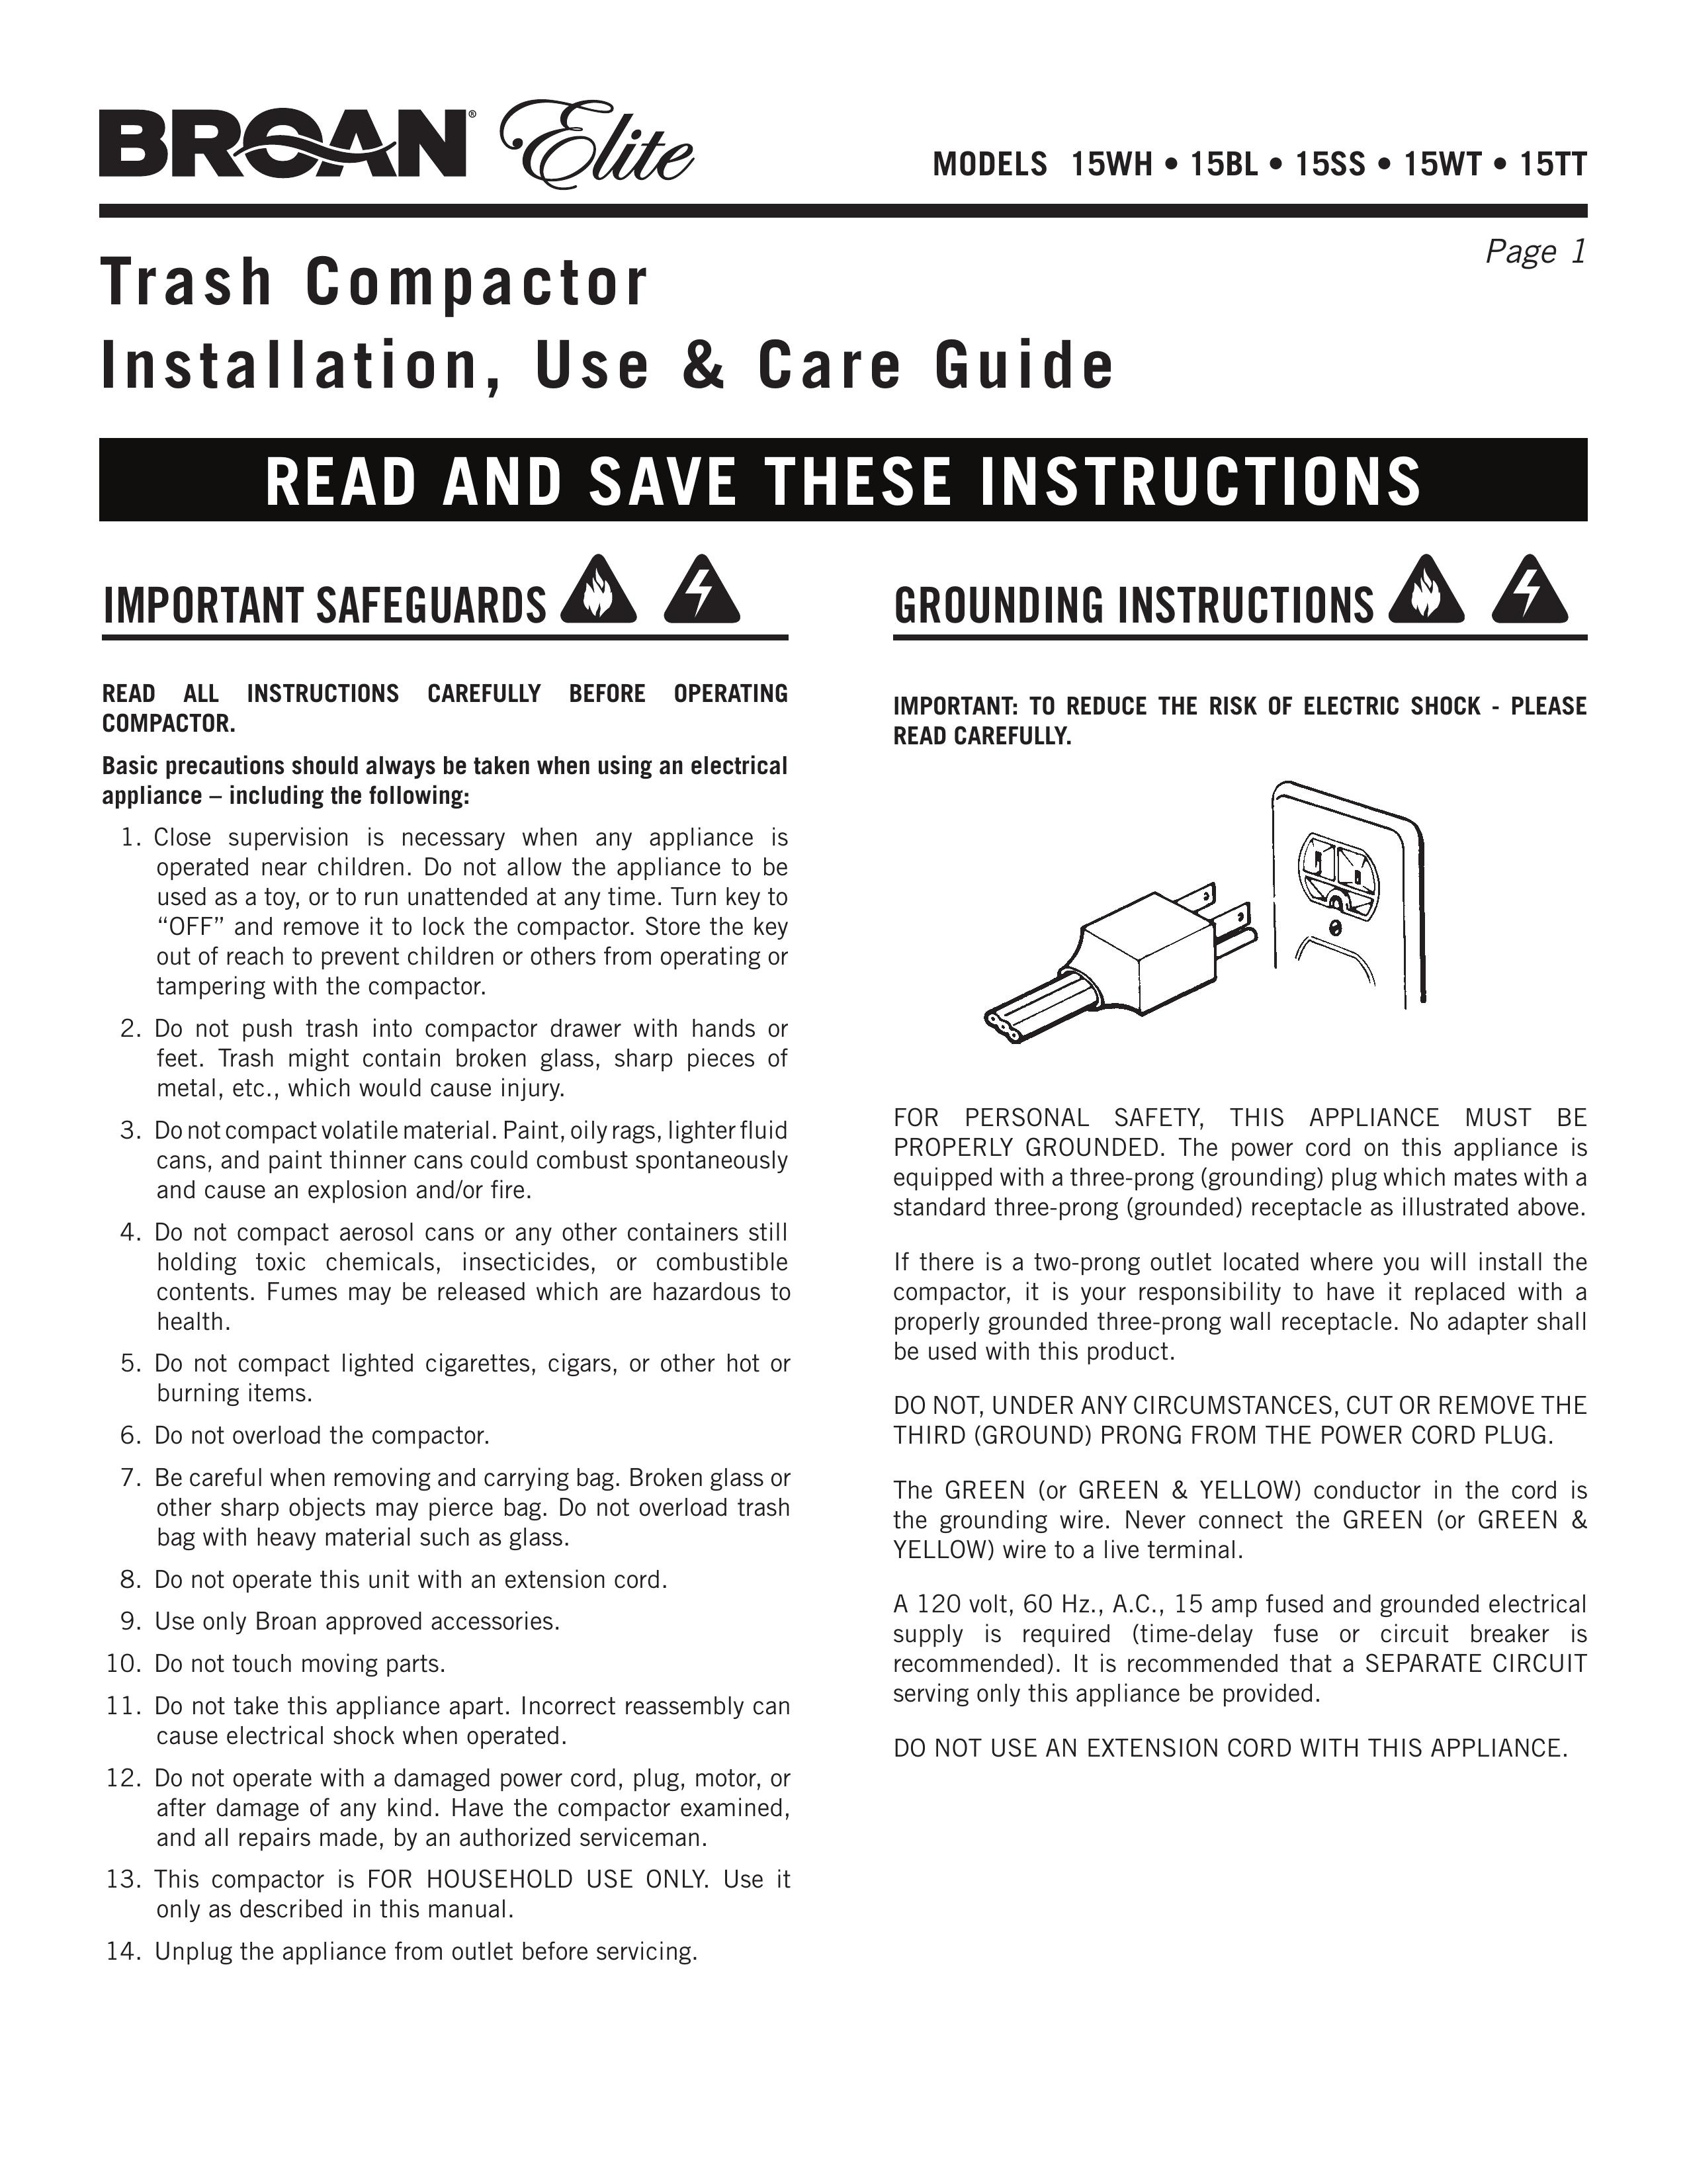 Broan 15WT Trash Compactor User Manual